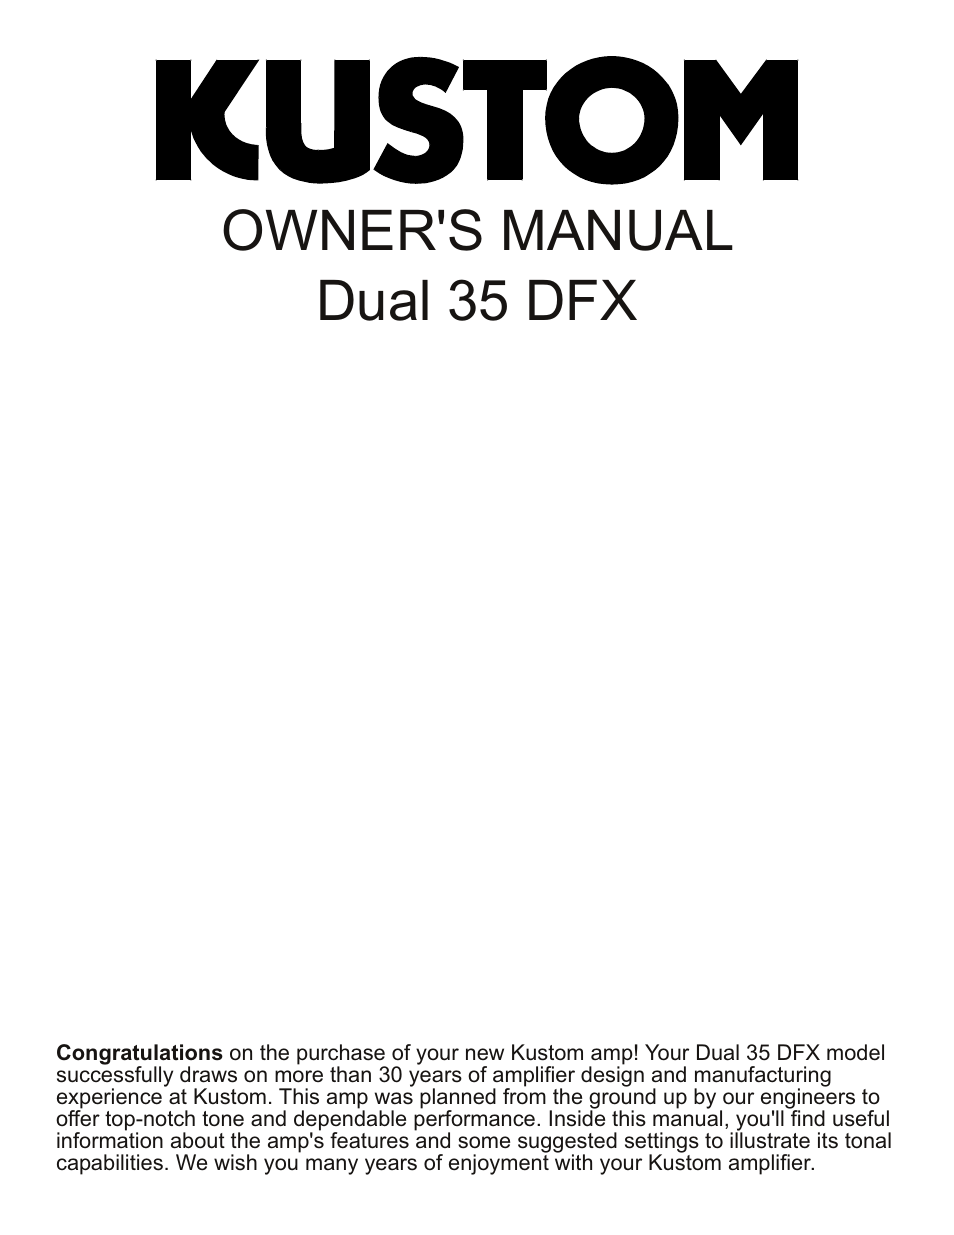 Dual 35 DFX